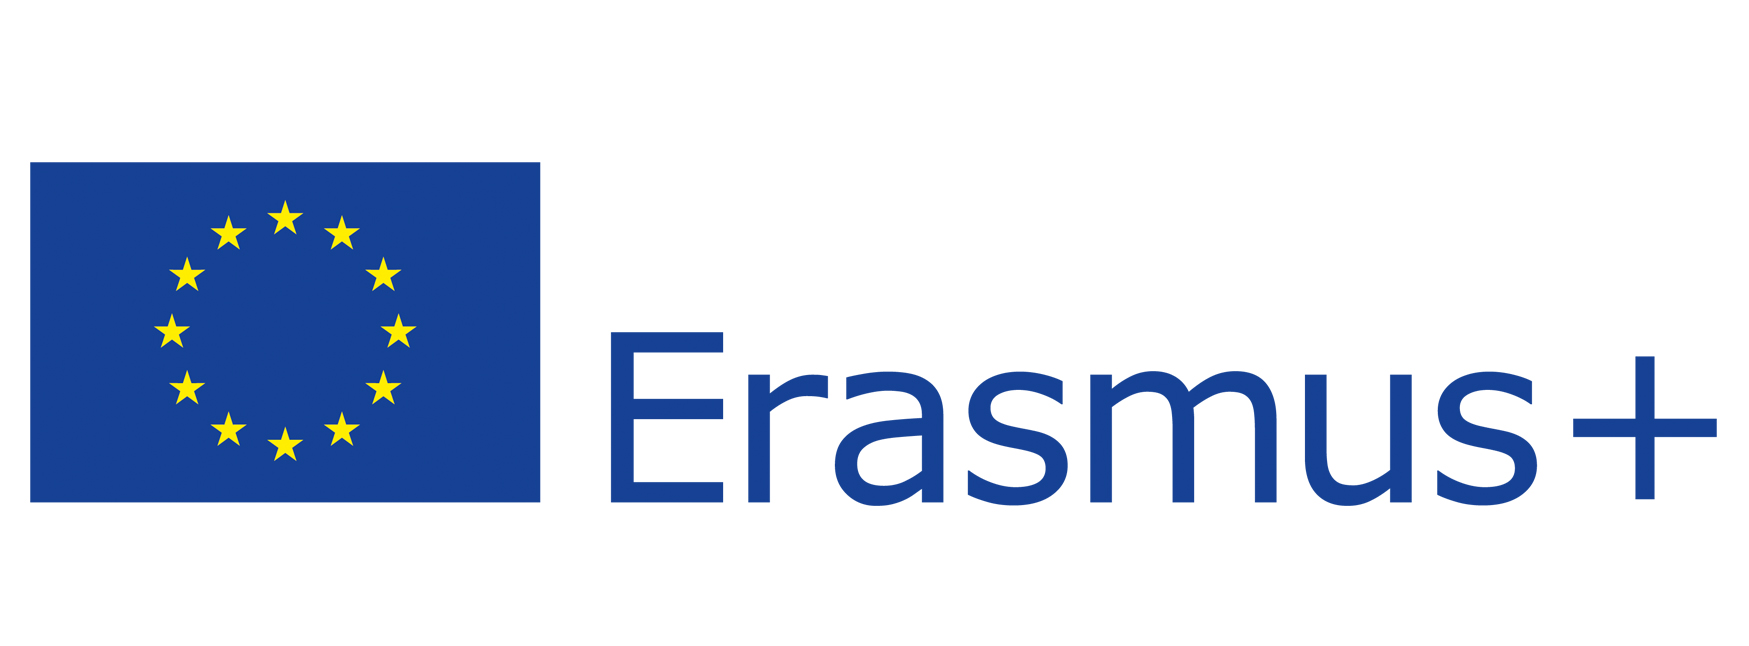 Erasmus Plus